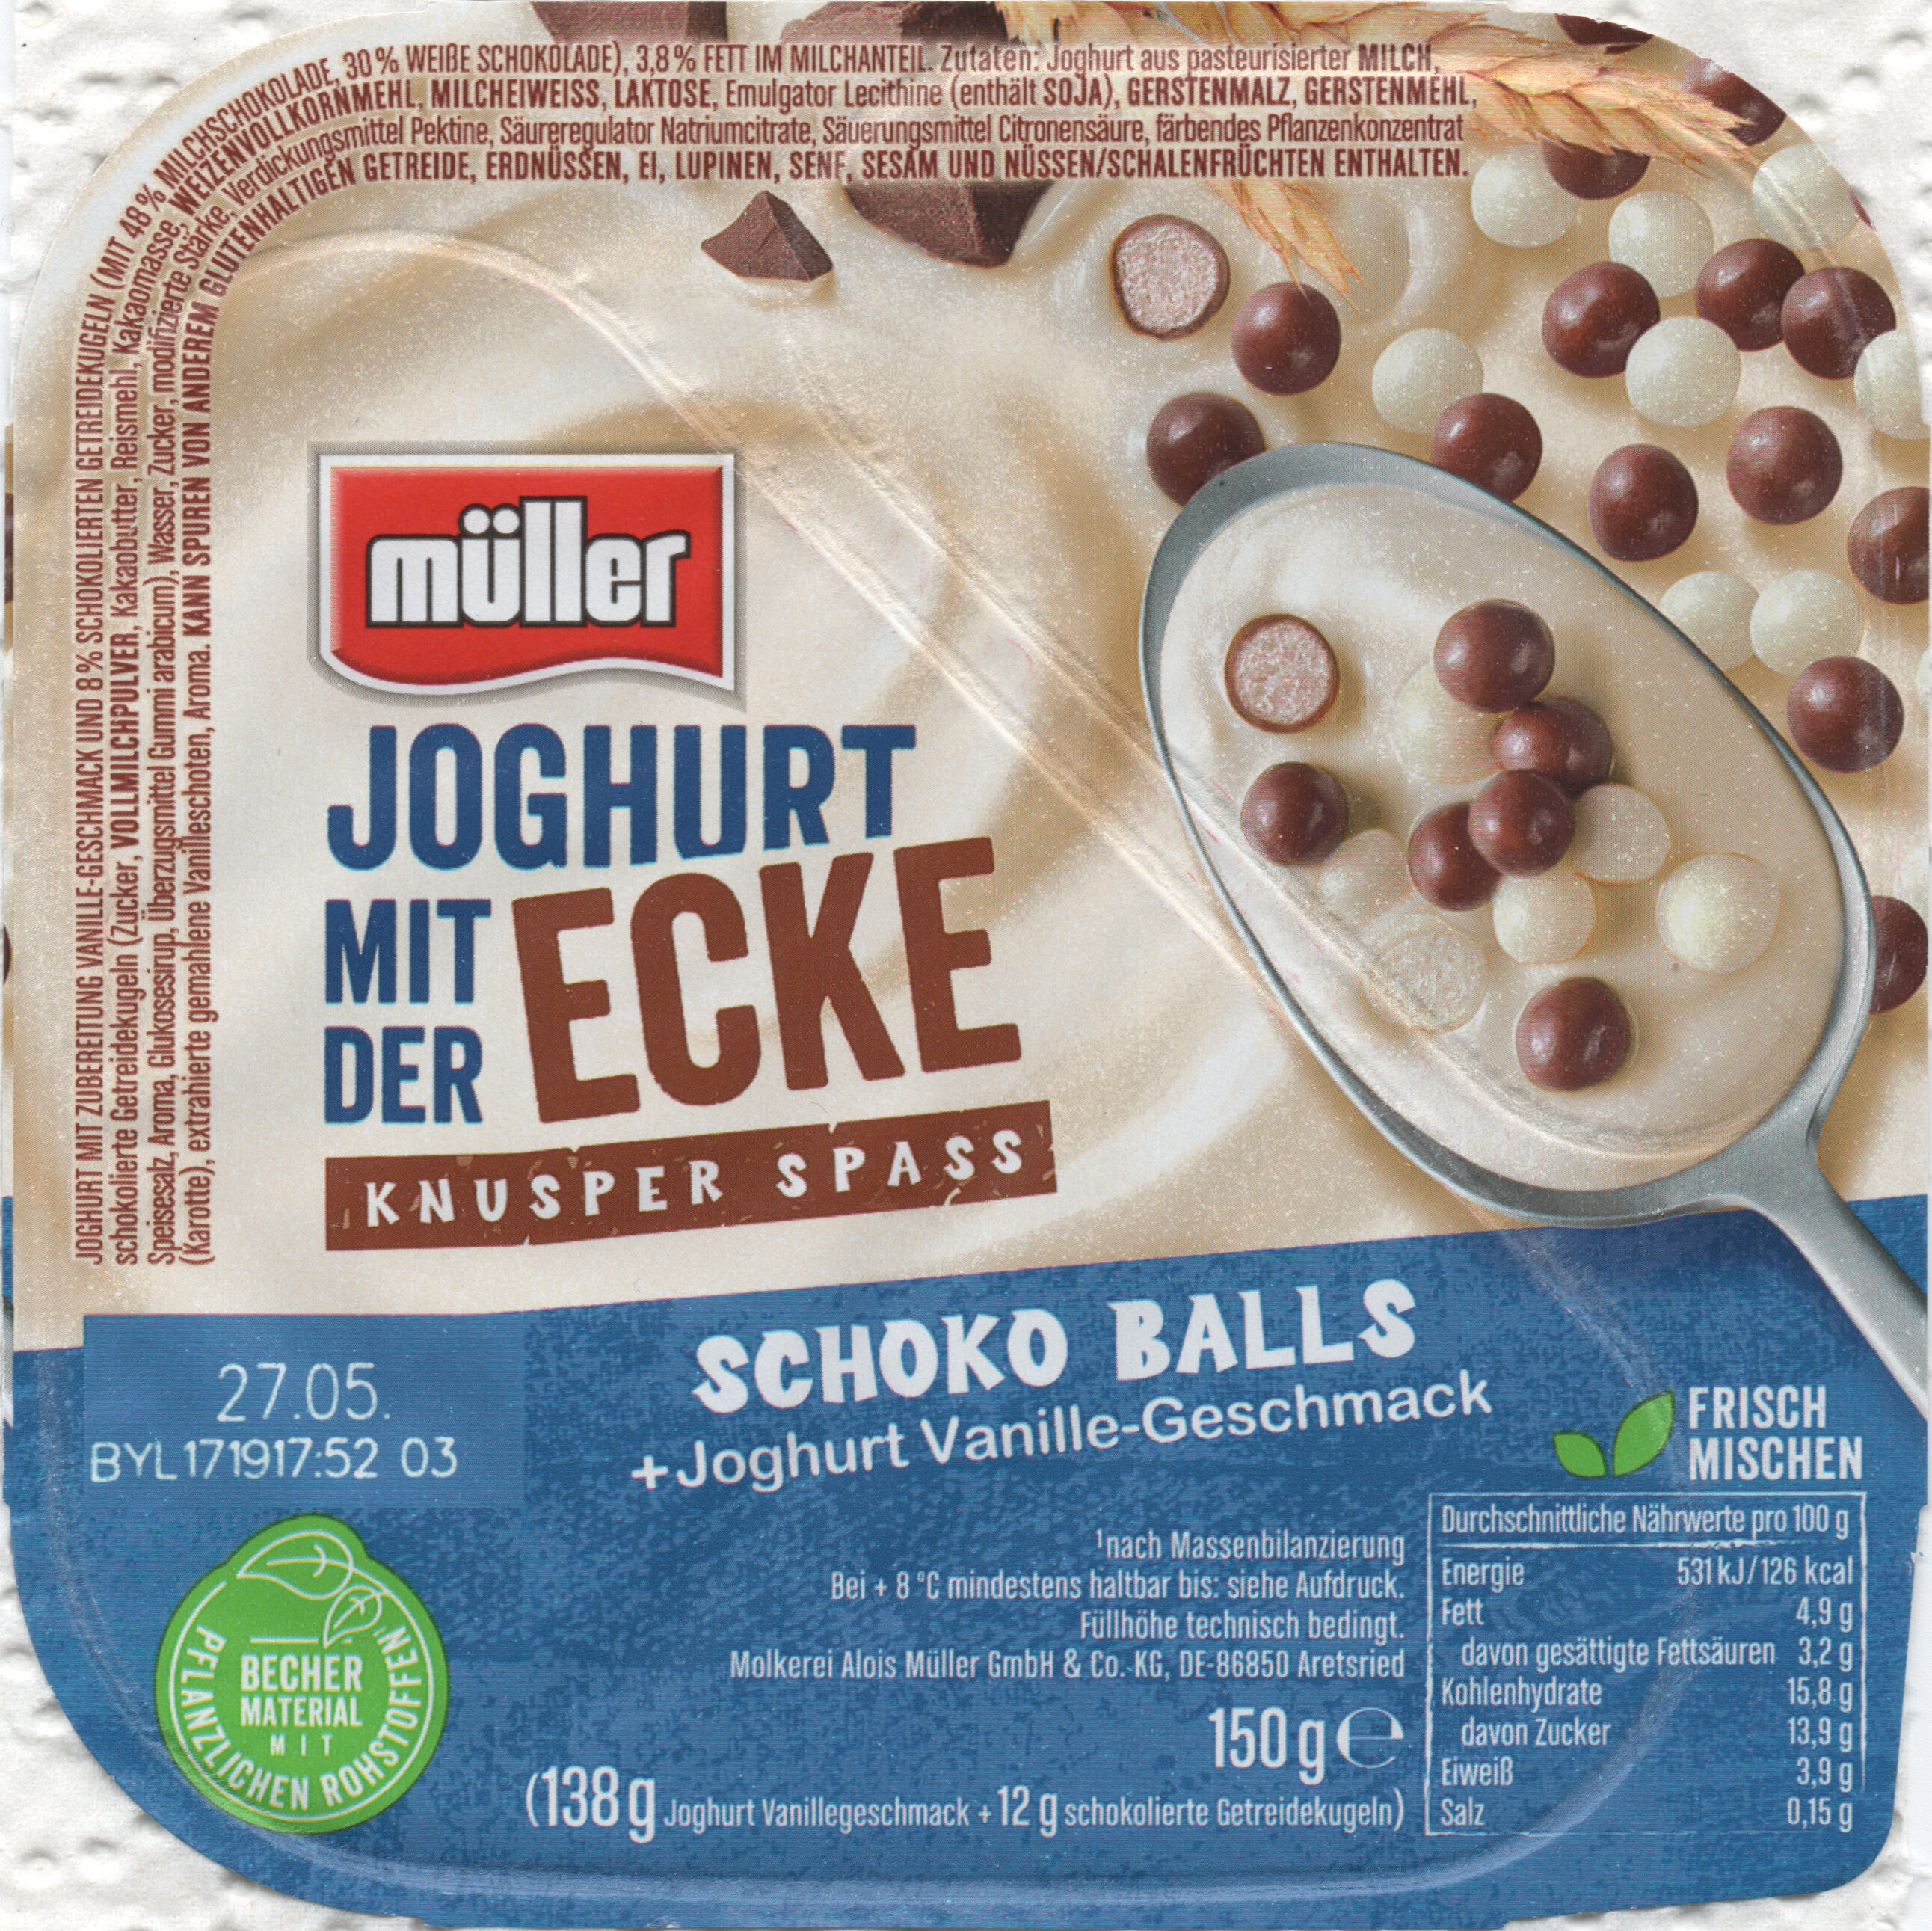 Joghurt mit der Ecke: Schoko Balls - Product - de